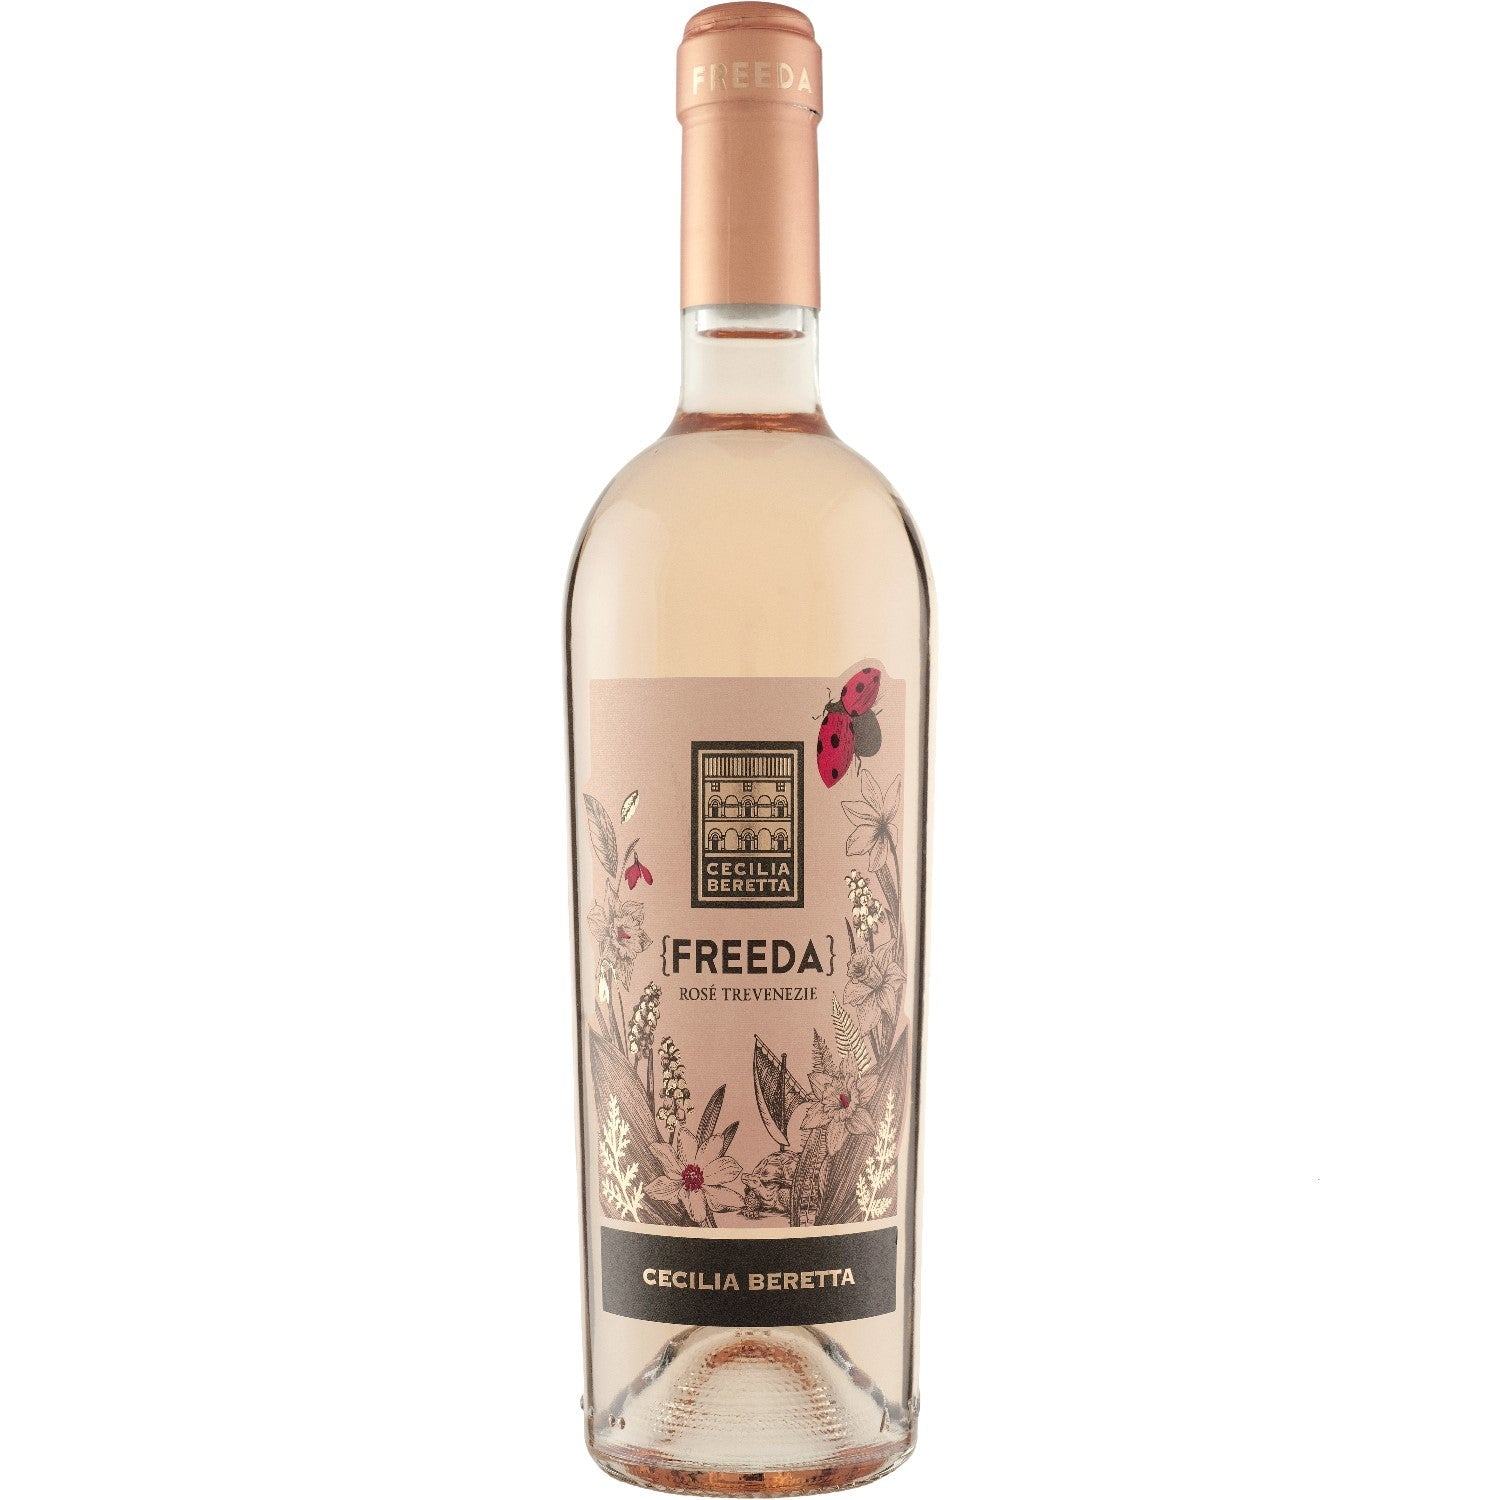 Cecilia Beretta Freeda Rosé Trevenezie IGT Roséwein Wein trocken Italien (12 x 0.75l) - Versanel -